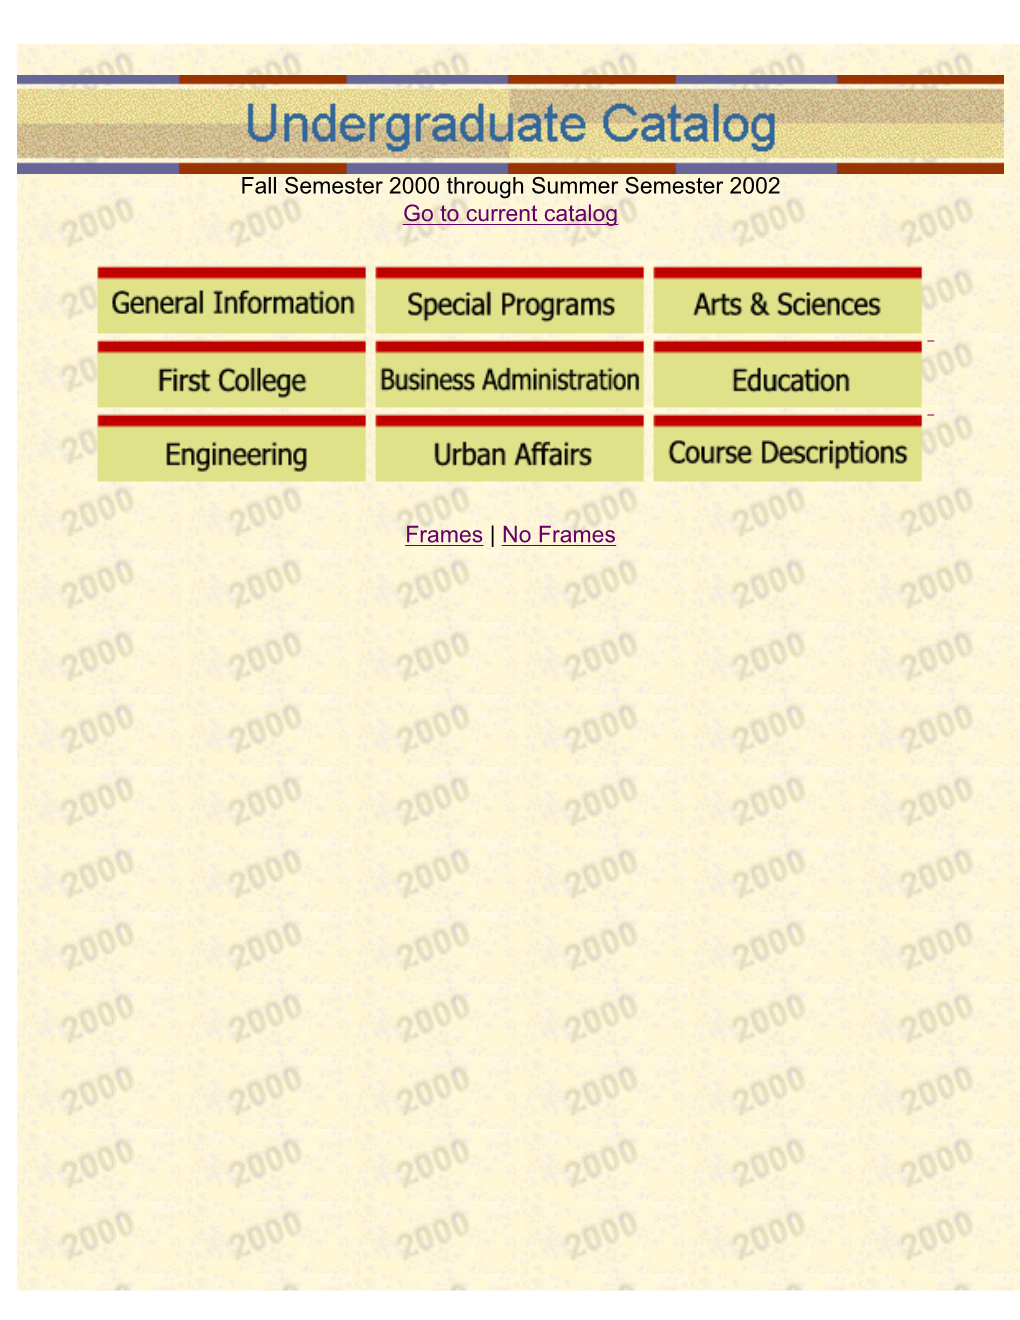 Undergraduate Catalog 2000-2002